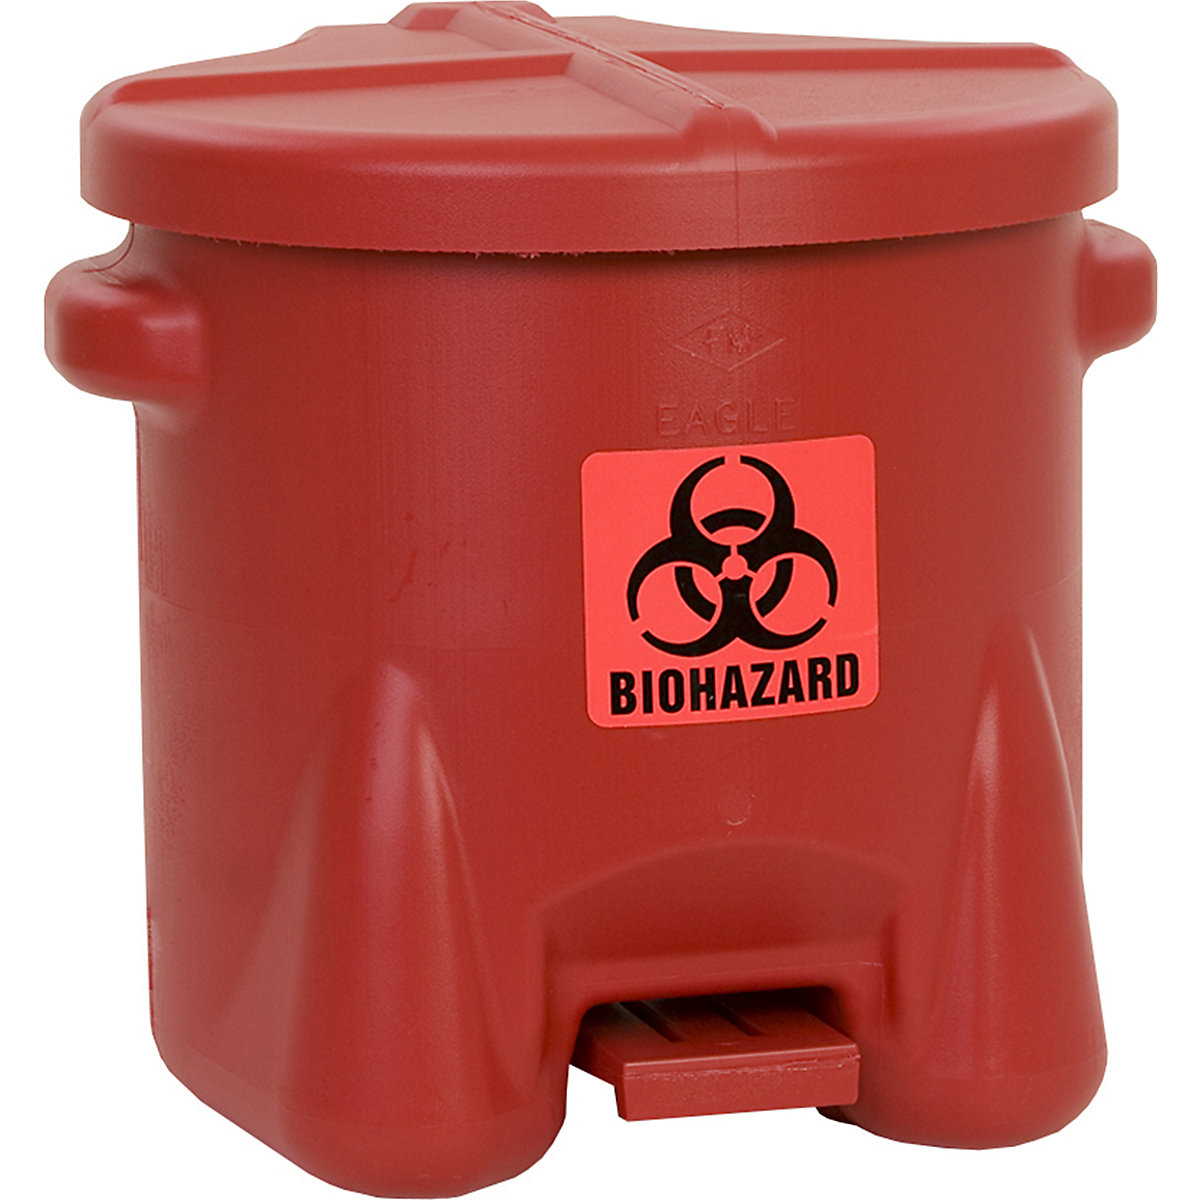 Recipiente de seguridad de PE para la eliminación de residuos biopeligrosos - Justrite